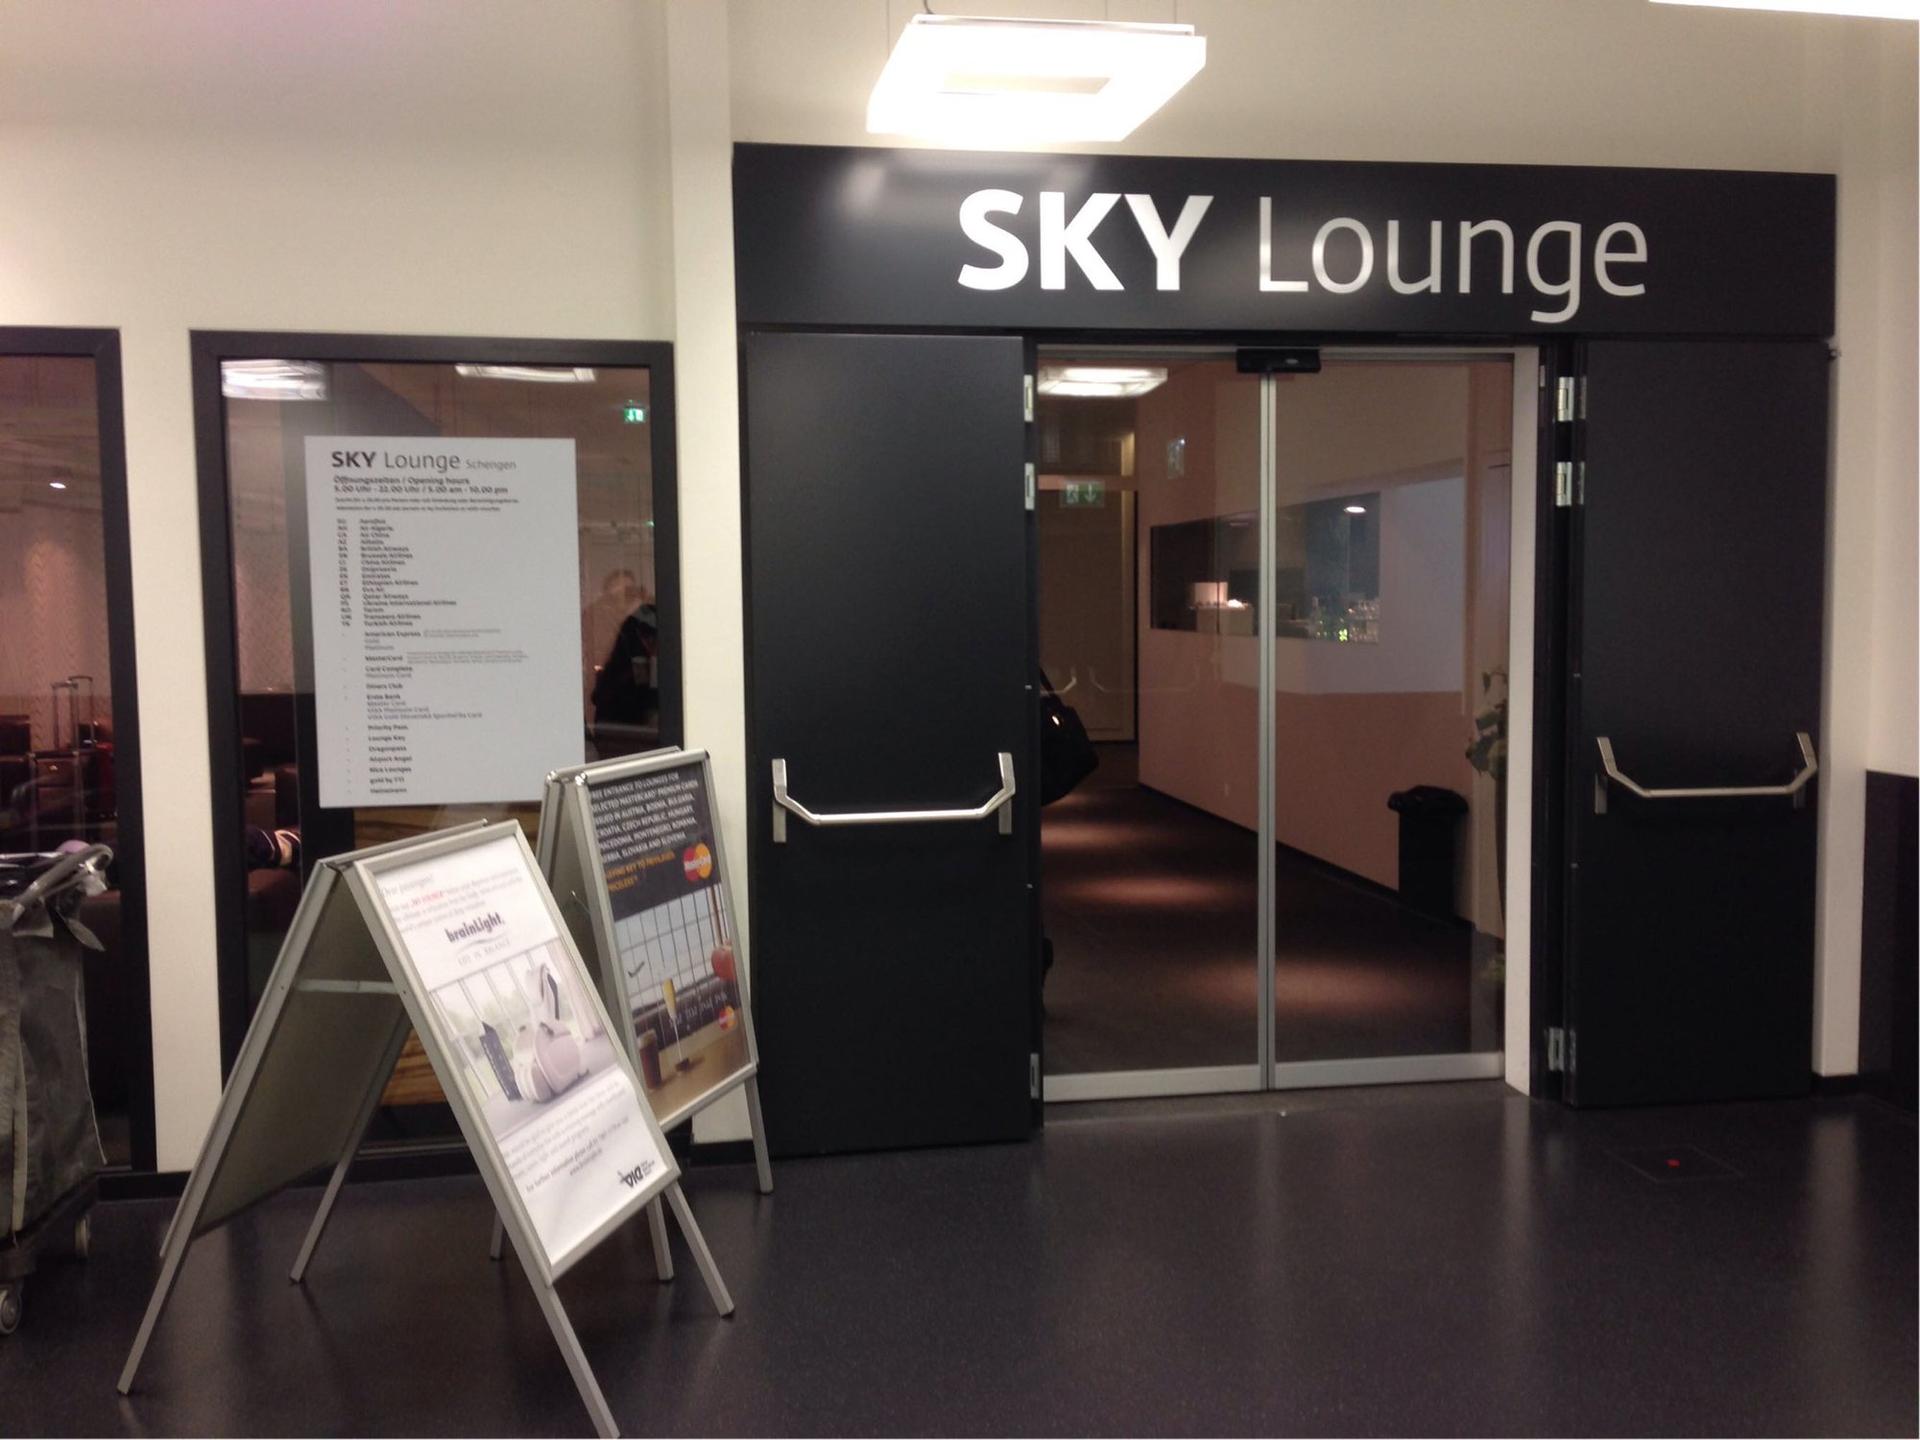 Sky Lounge (Schengen) image 21 of 43